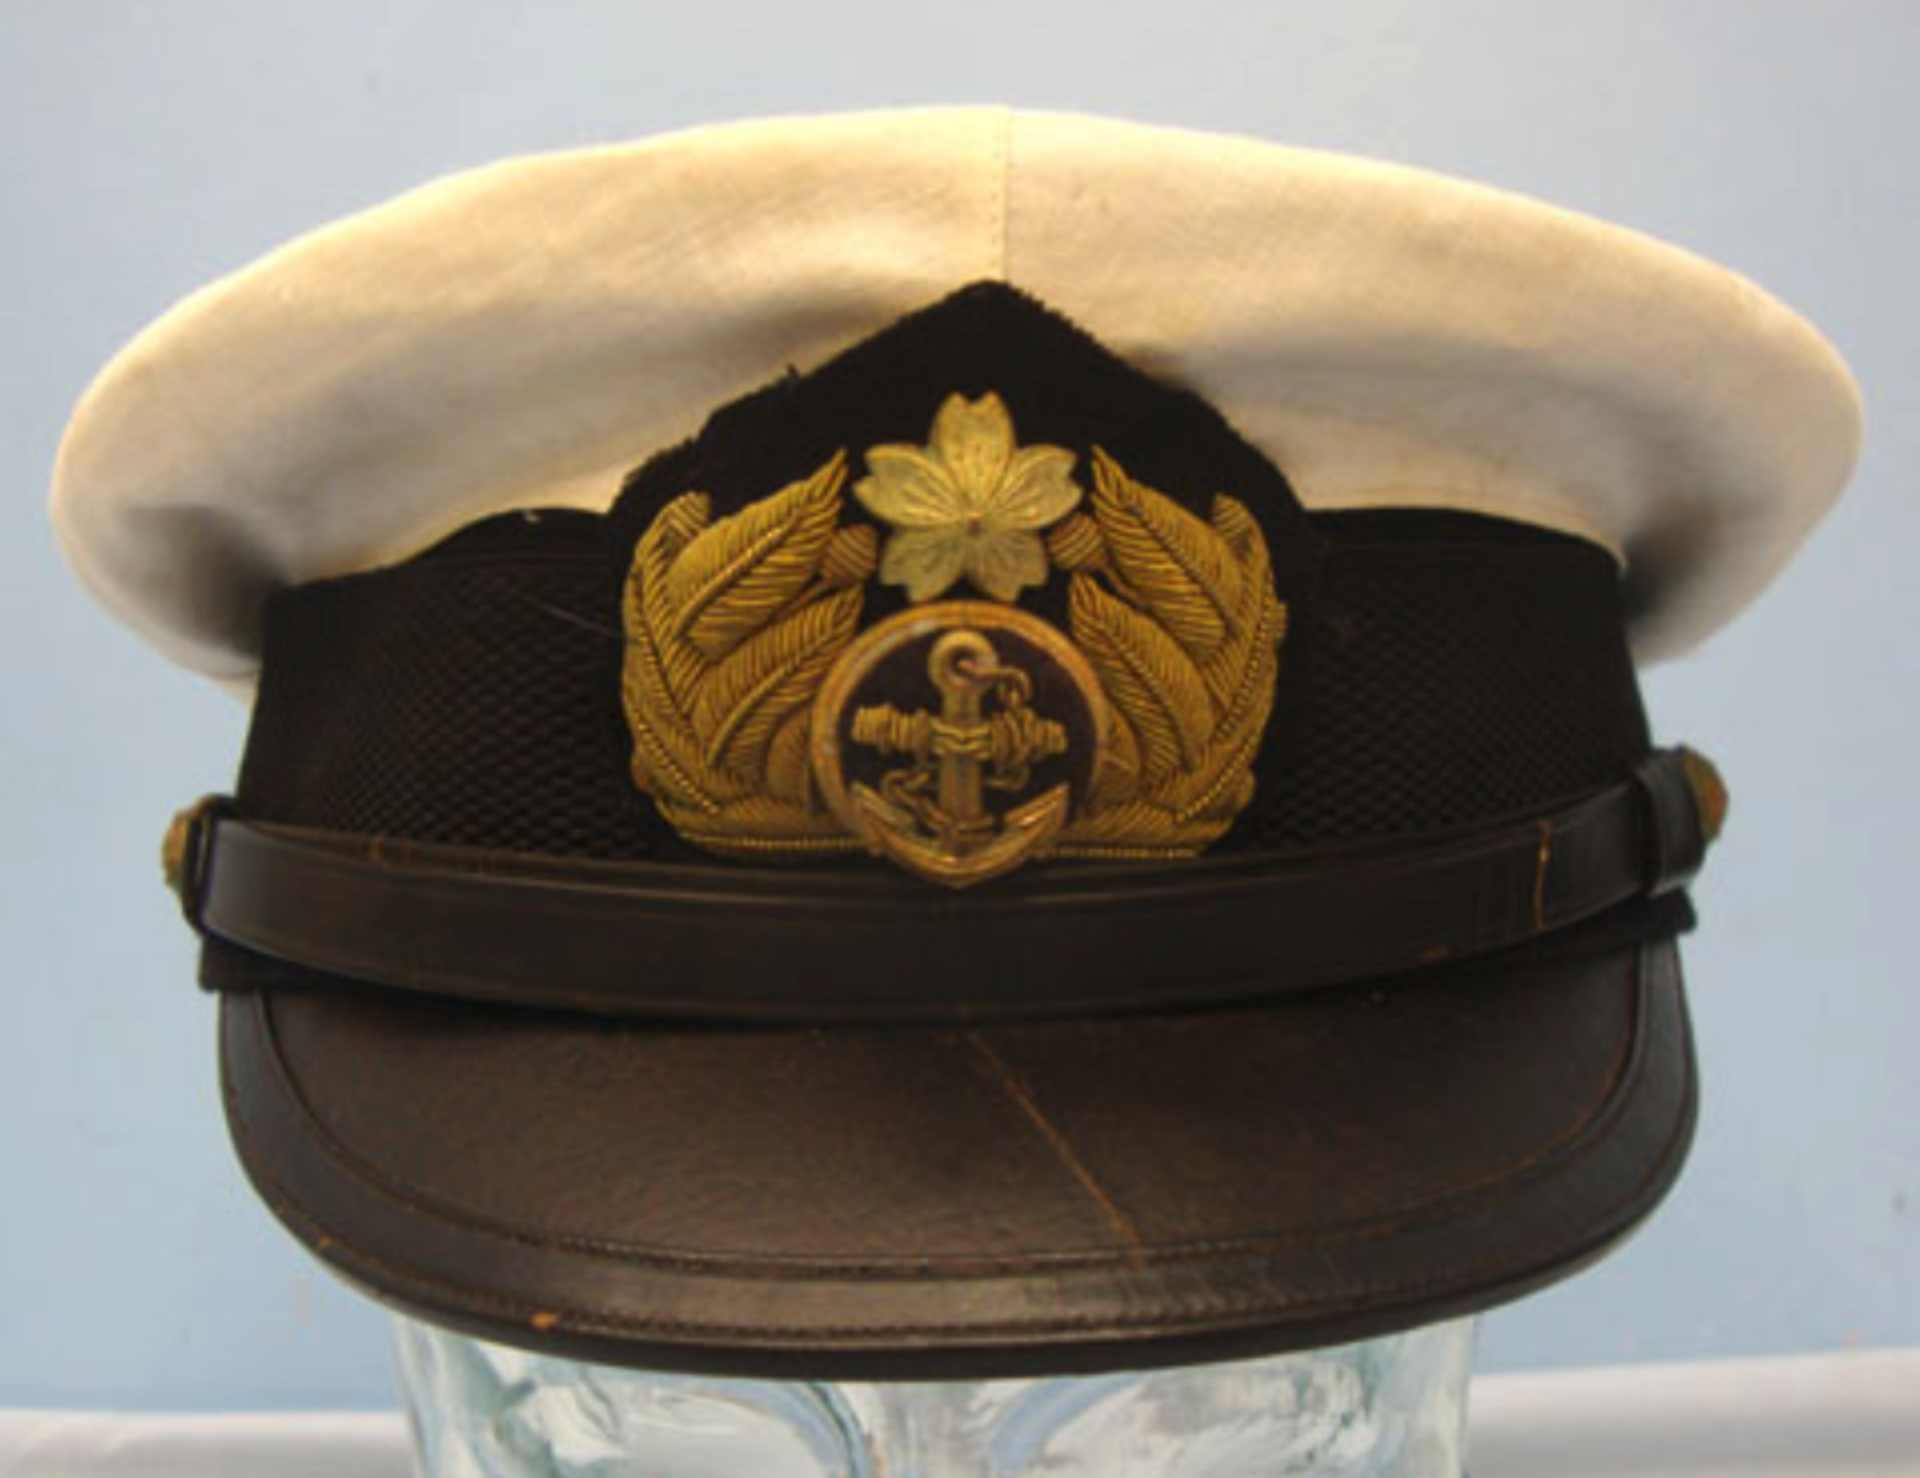 WW2 Japanese Naval Officer's White Cover Summer Uniform Visor Cap with Bullion Badge - Image 3 of 3